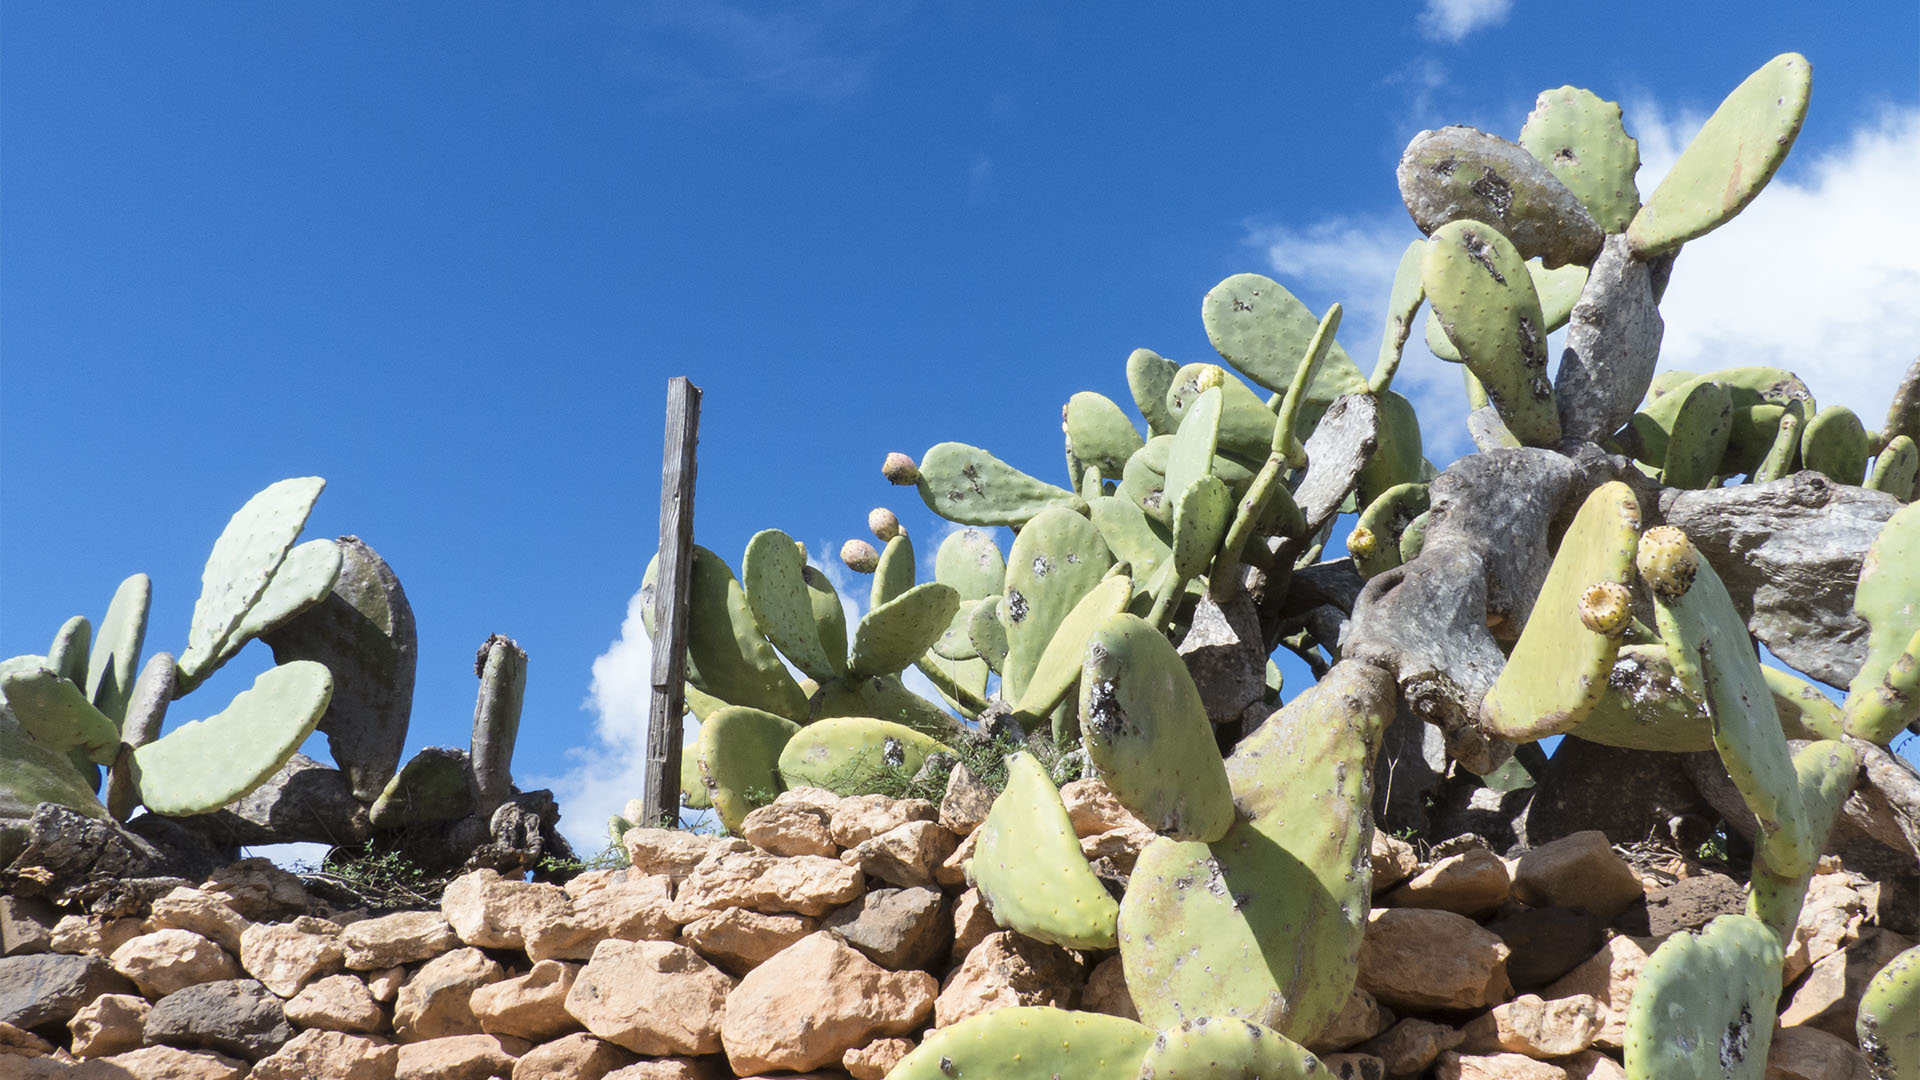 Der Ort Valle de Ortega Fuerteventura: Opuntien und deren Feigen in der Blüte.